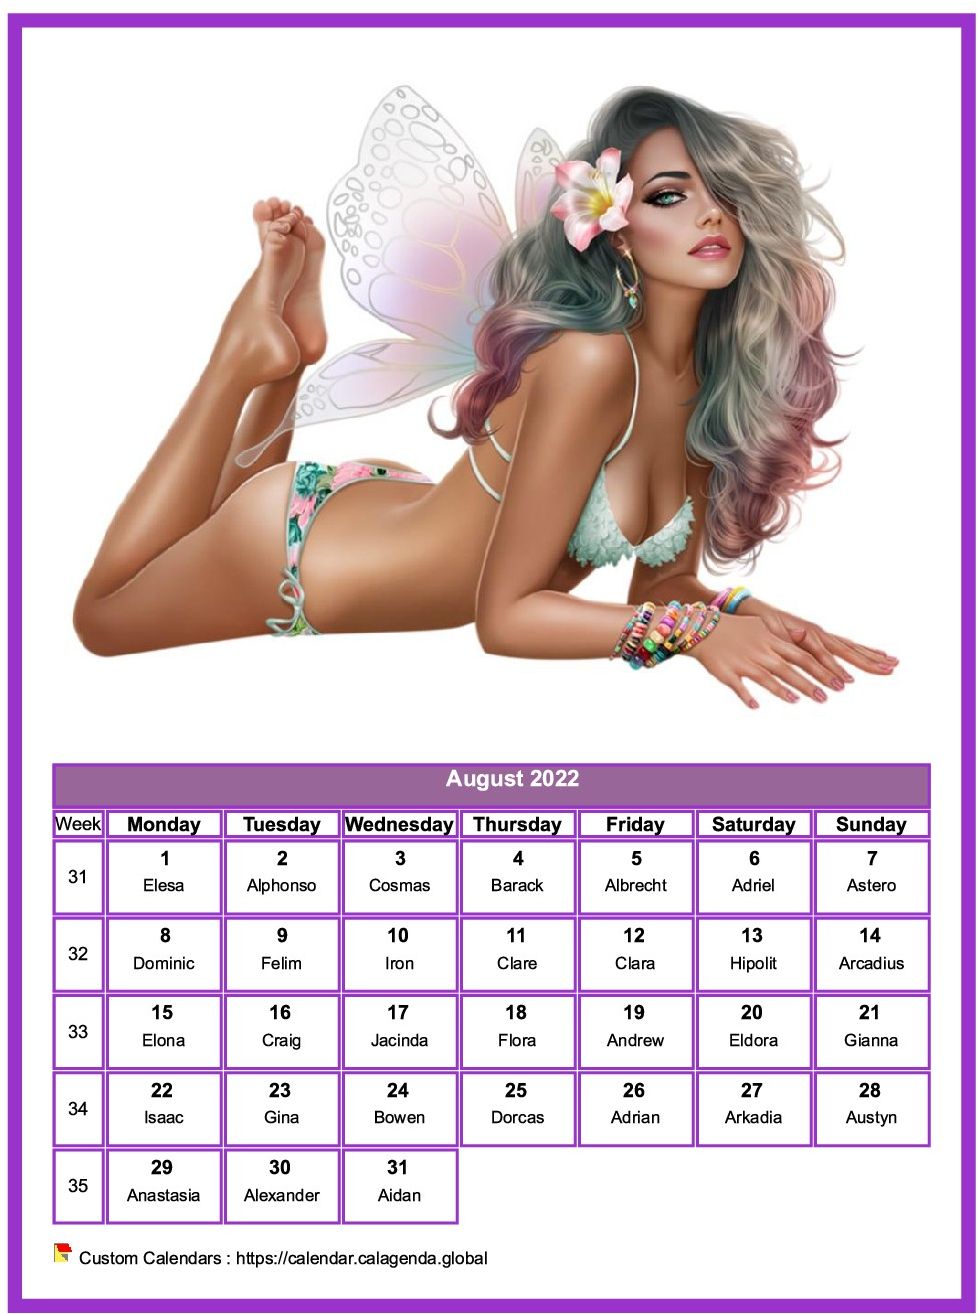 Calendar August 2022 women